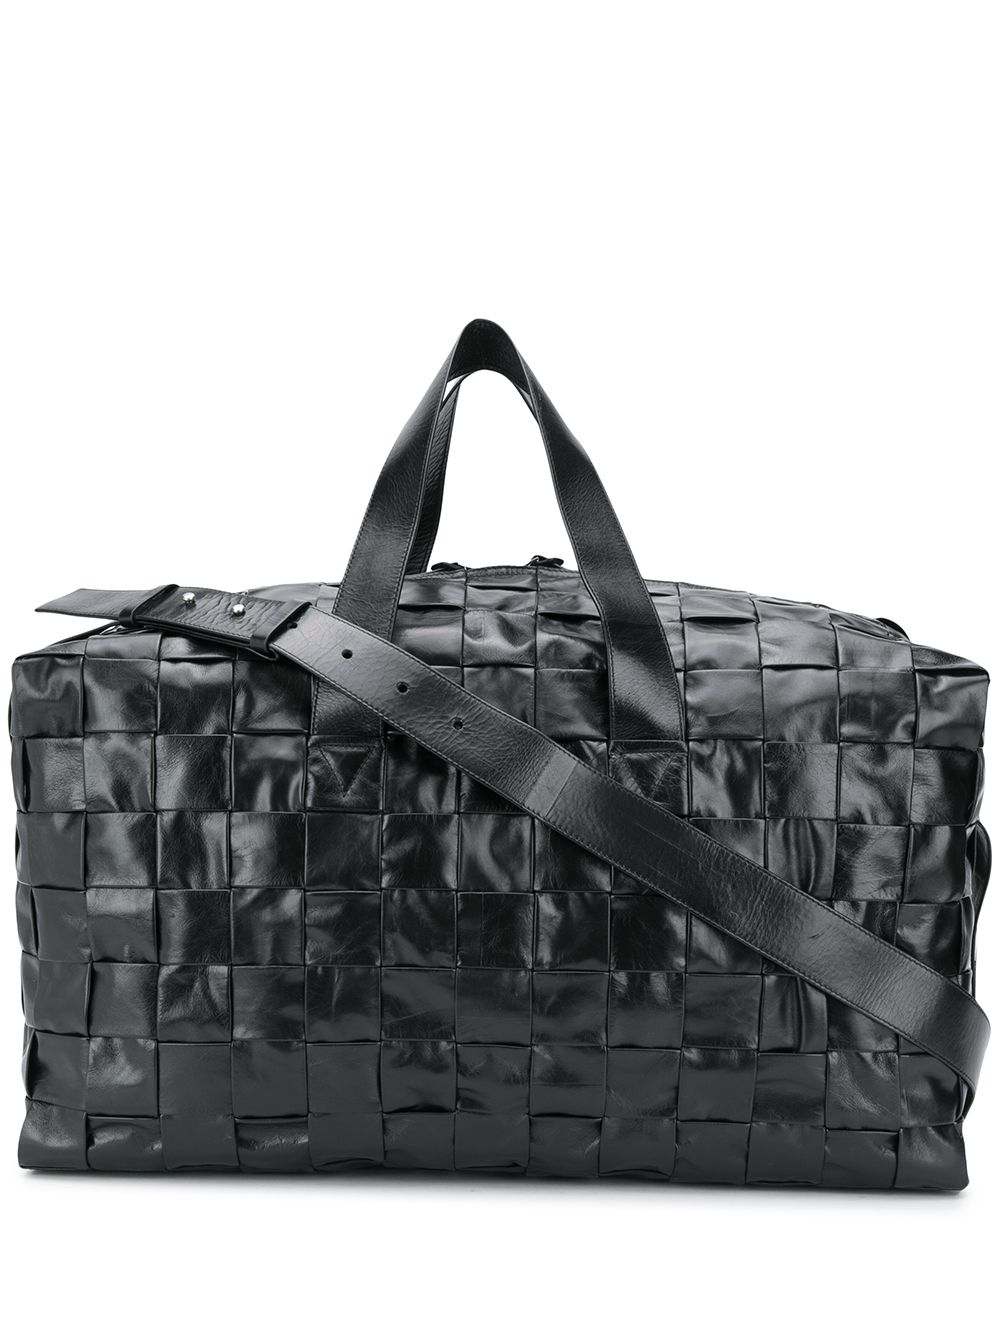 фото Bottega veneta плетеная дорожная сумка